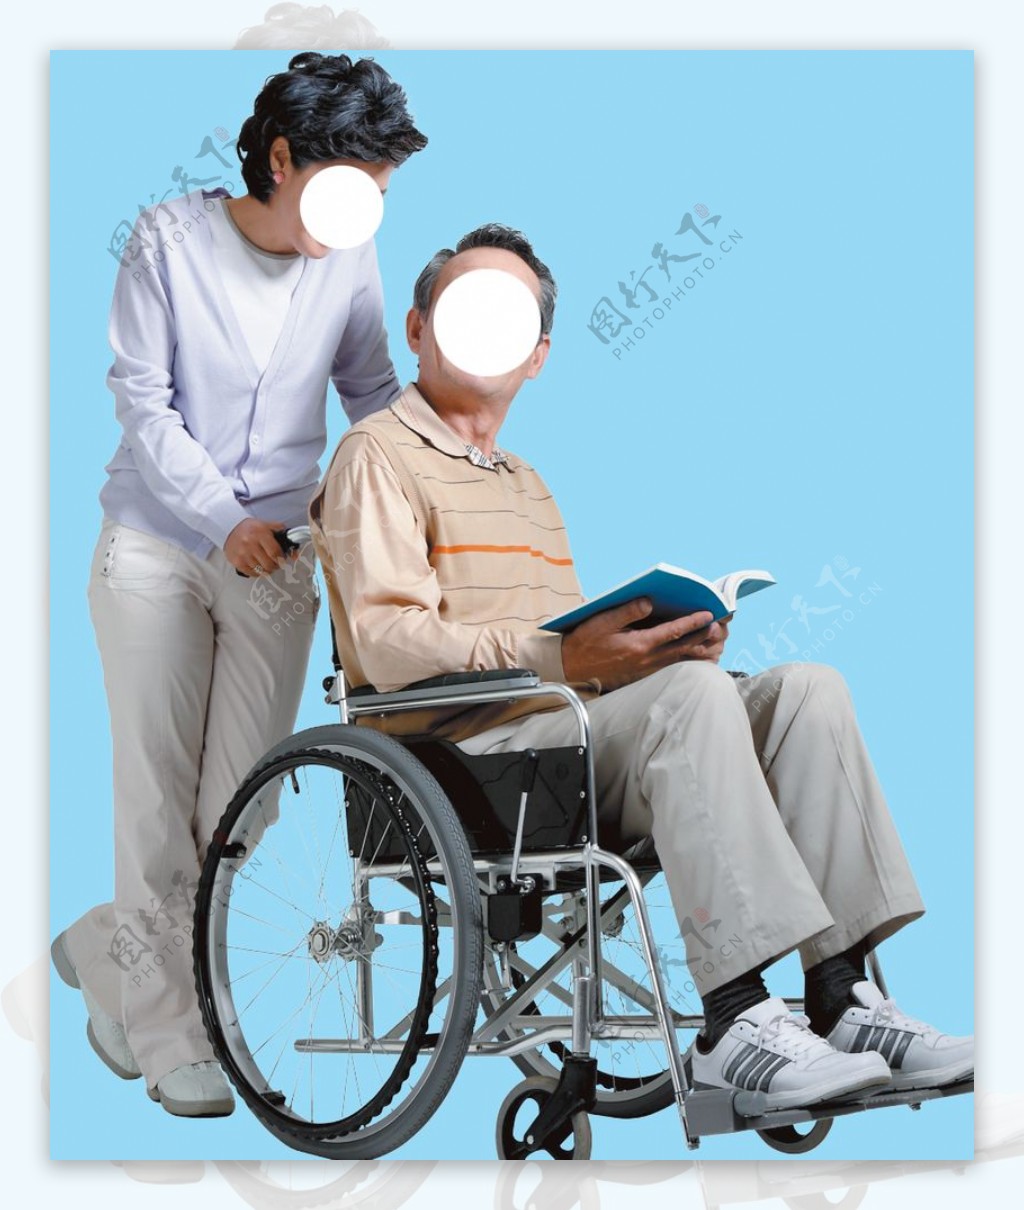 坐在輪椅上的孤獨老人背影圖片素材-JPG圖片尺寸8192 × 5464px-高清圖案501717183-zh.lovepik.com